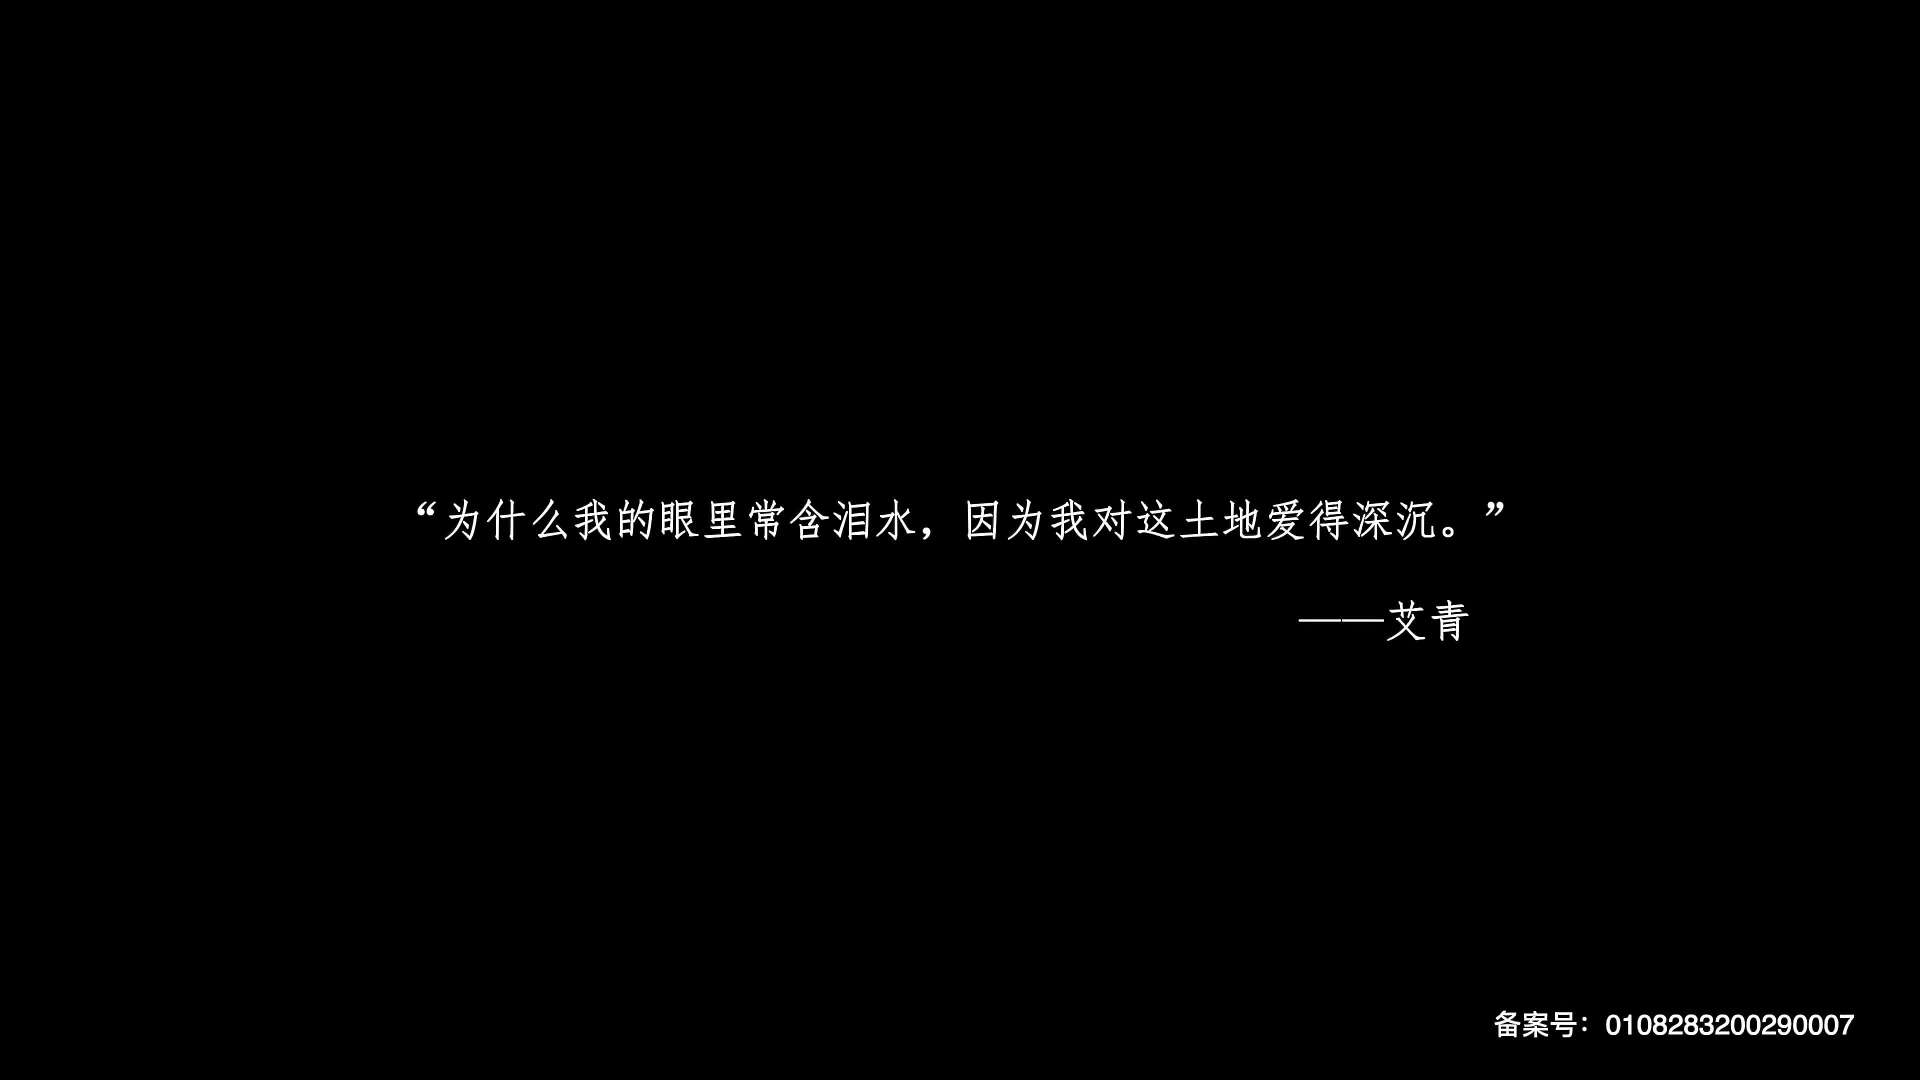 北京生声 原创音乐 声音设计 大地情书 第一季 第五集